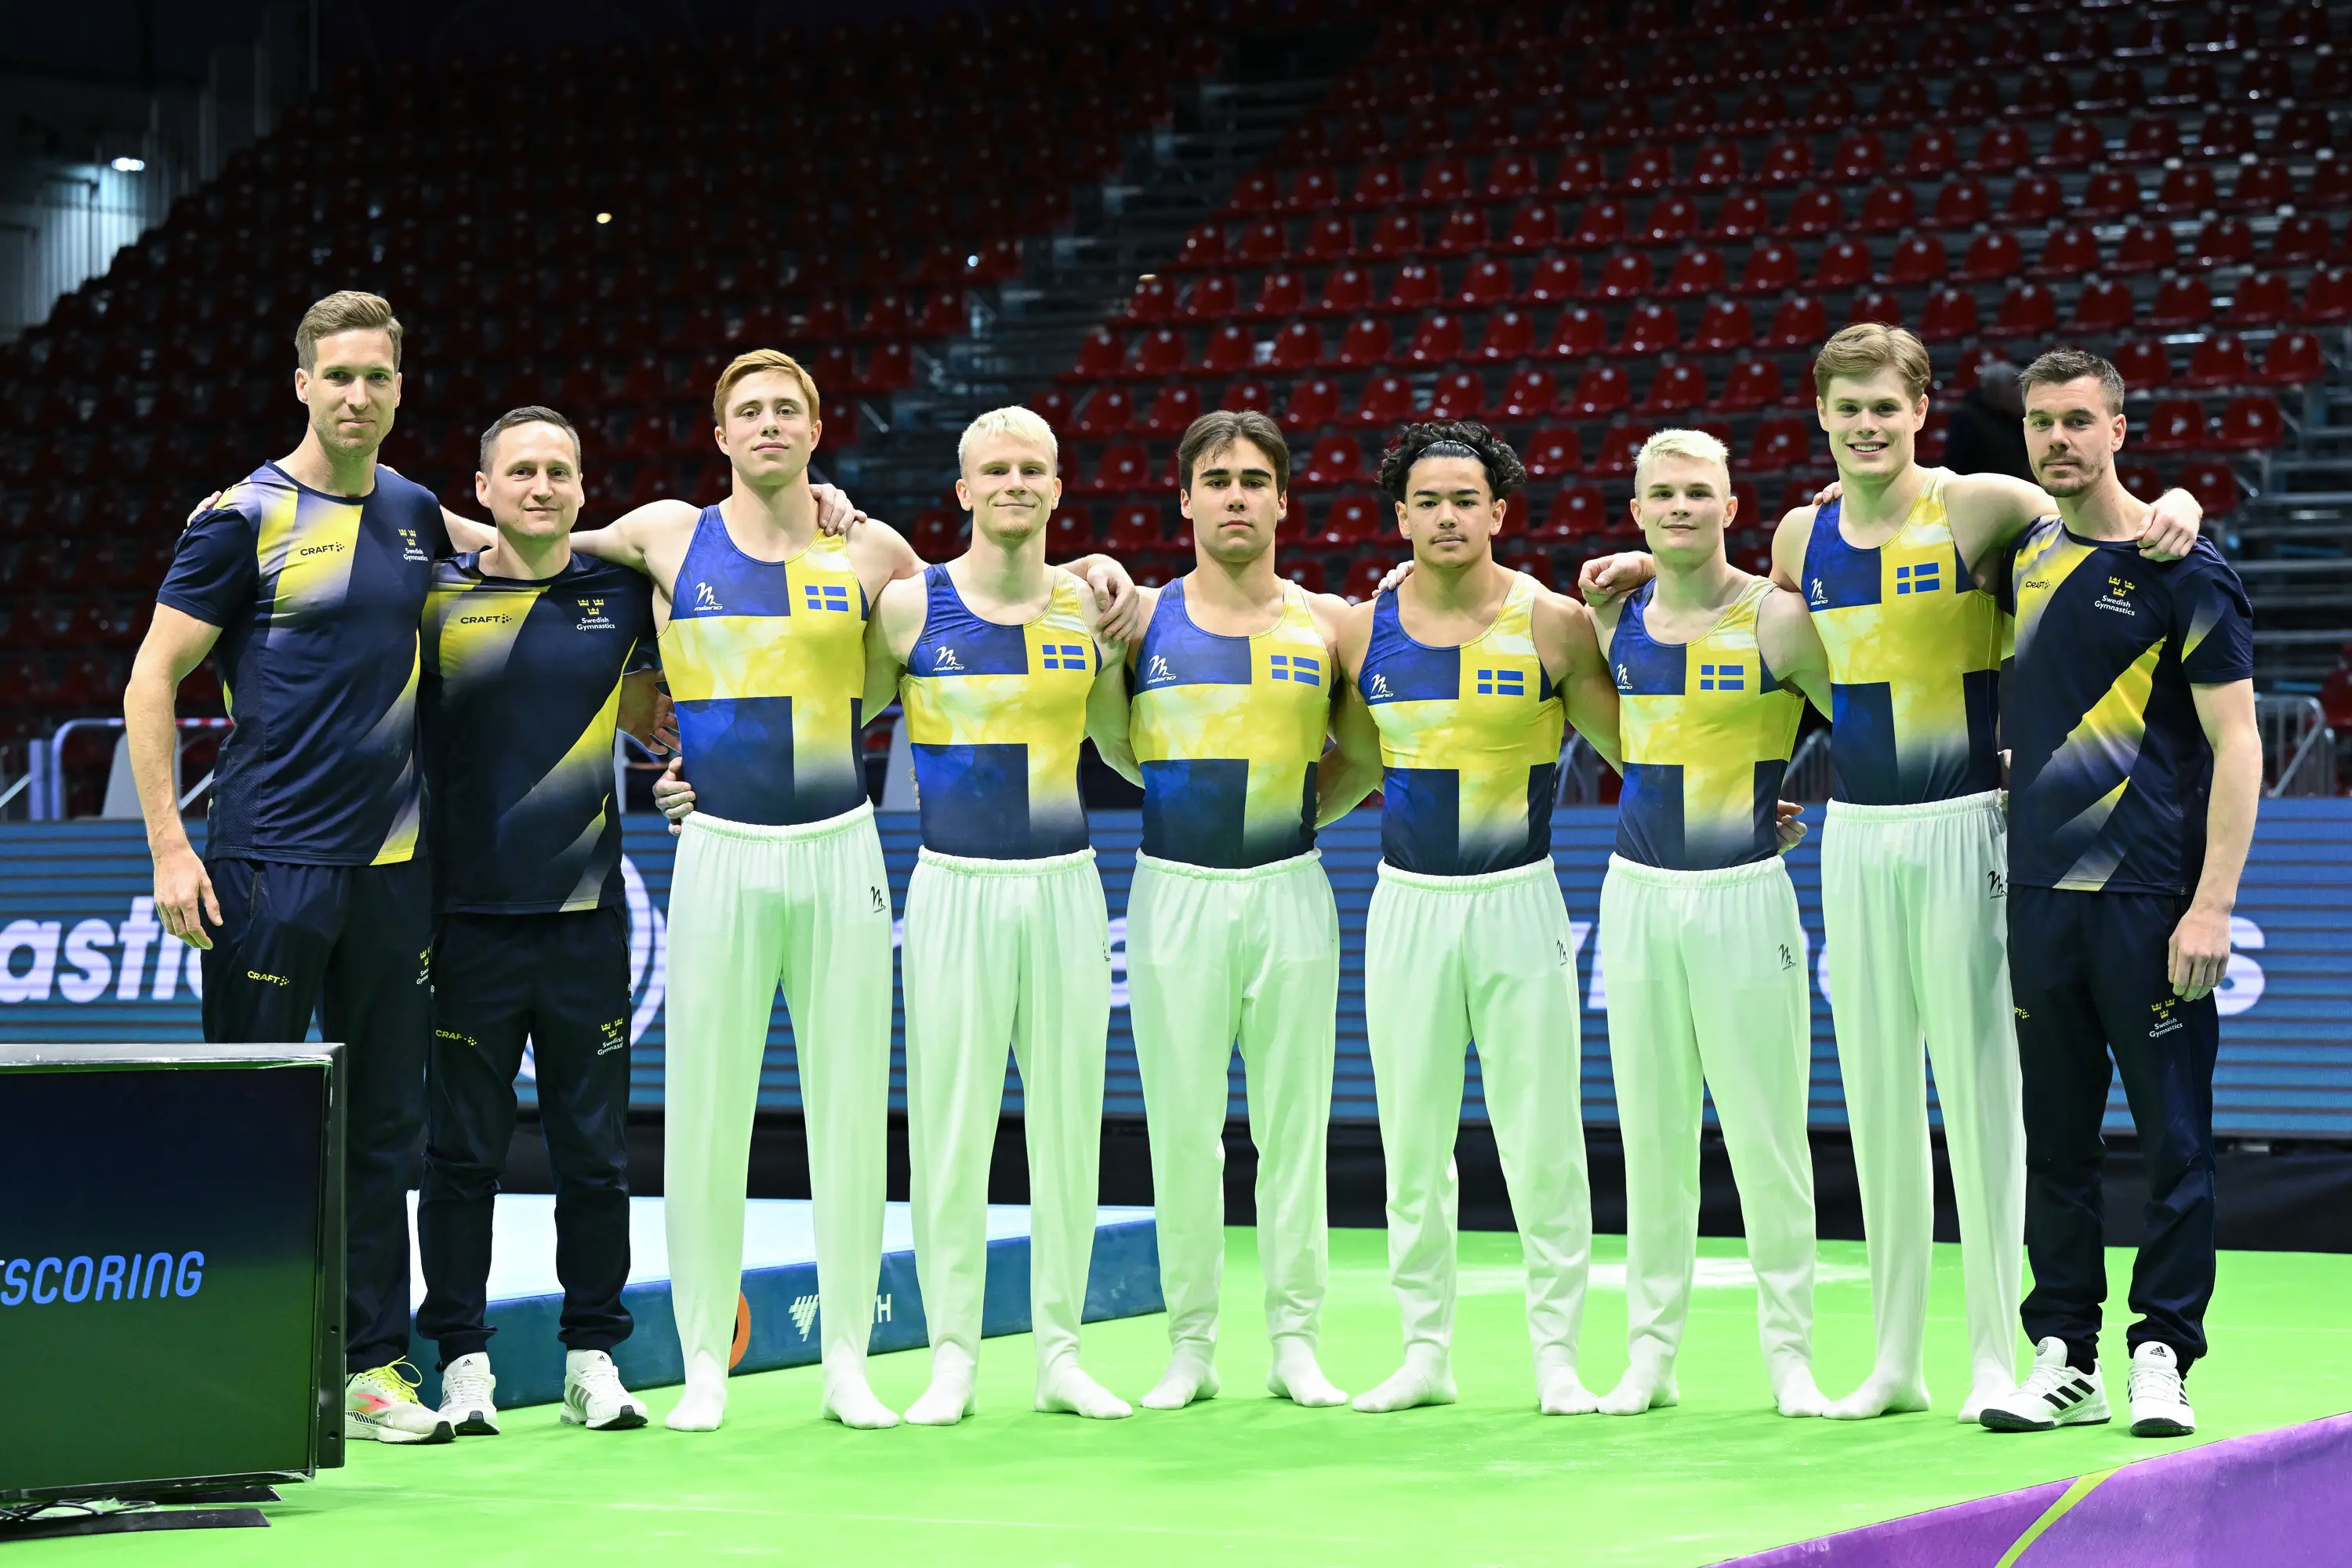 EM-laget i manlig artistisk gymnastik står uppställda efter tävling